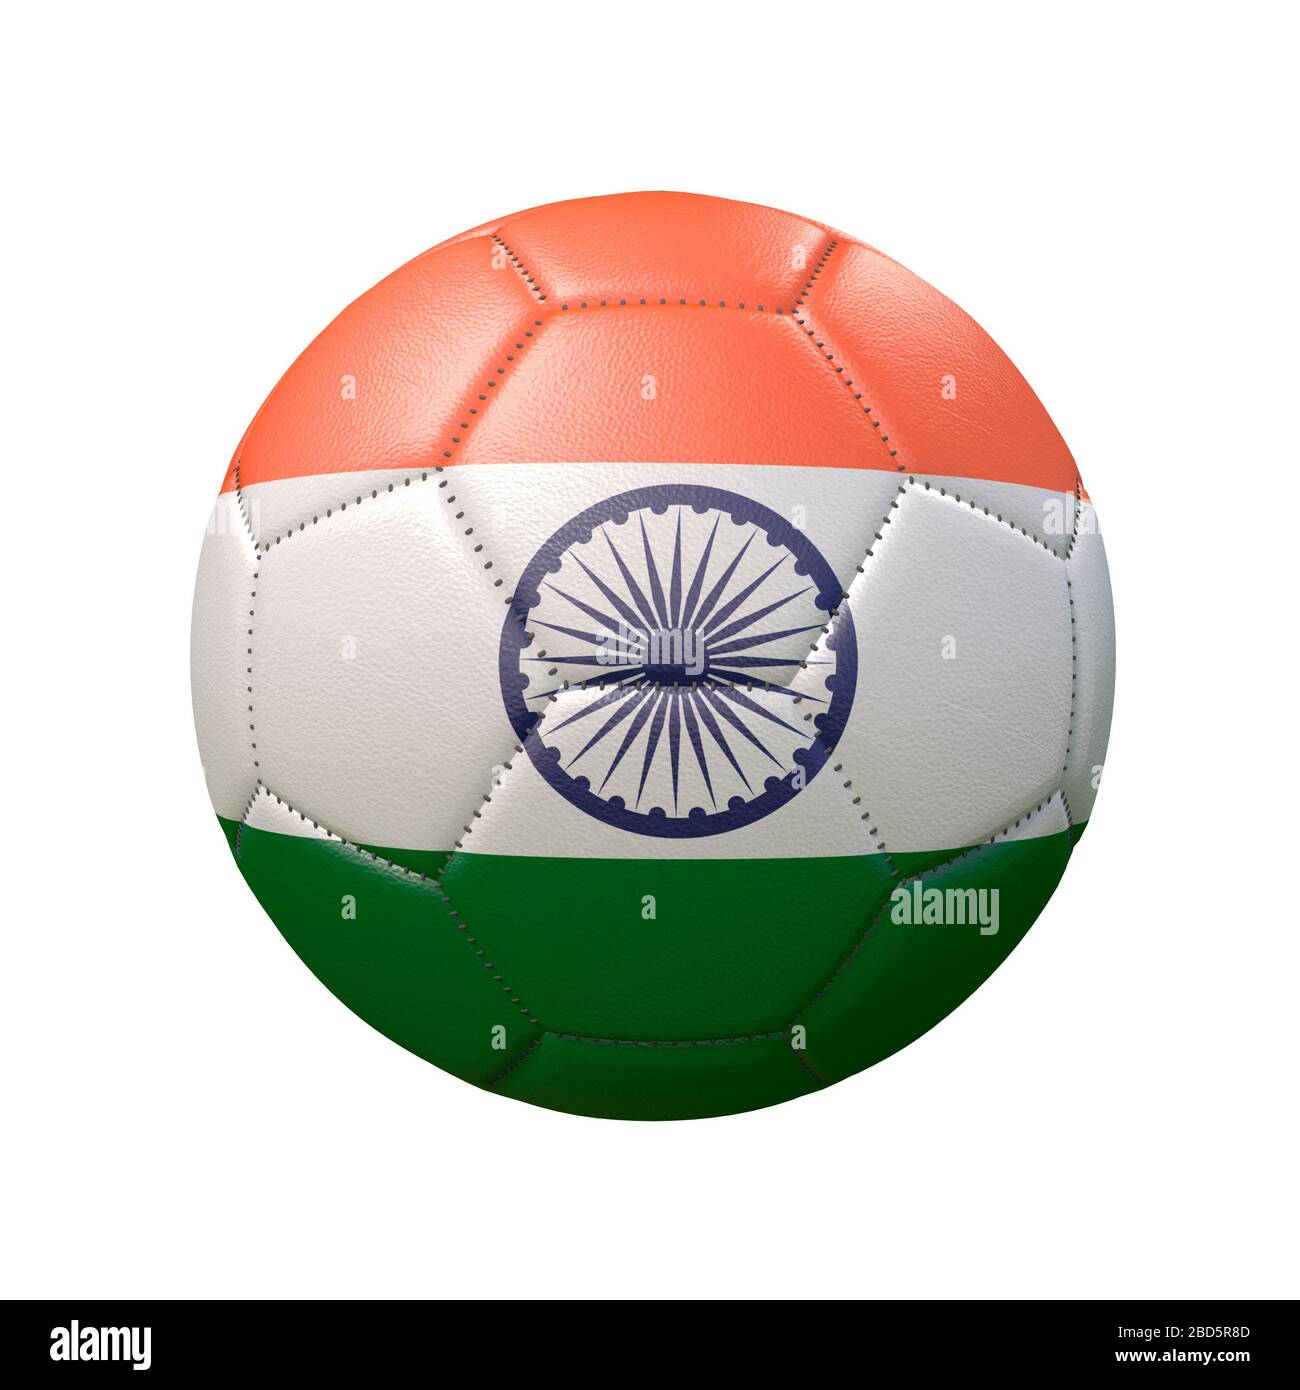 Bóng đá quốc gia Ấn Độ trên nền trắng: Người hâm mộ bóng đá sẽ không muốn bỏ lỡ bức tranh tuyệt đẹp này với bóng đá quốc gia Ấn Độ được thể hiện trên nền trắng. Hãy cùng khám phá sự tinh tế, trang nhã và sức mạnh của đội tuyển Ấn Độ trong bức ảnh đầy màu sắc này.